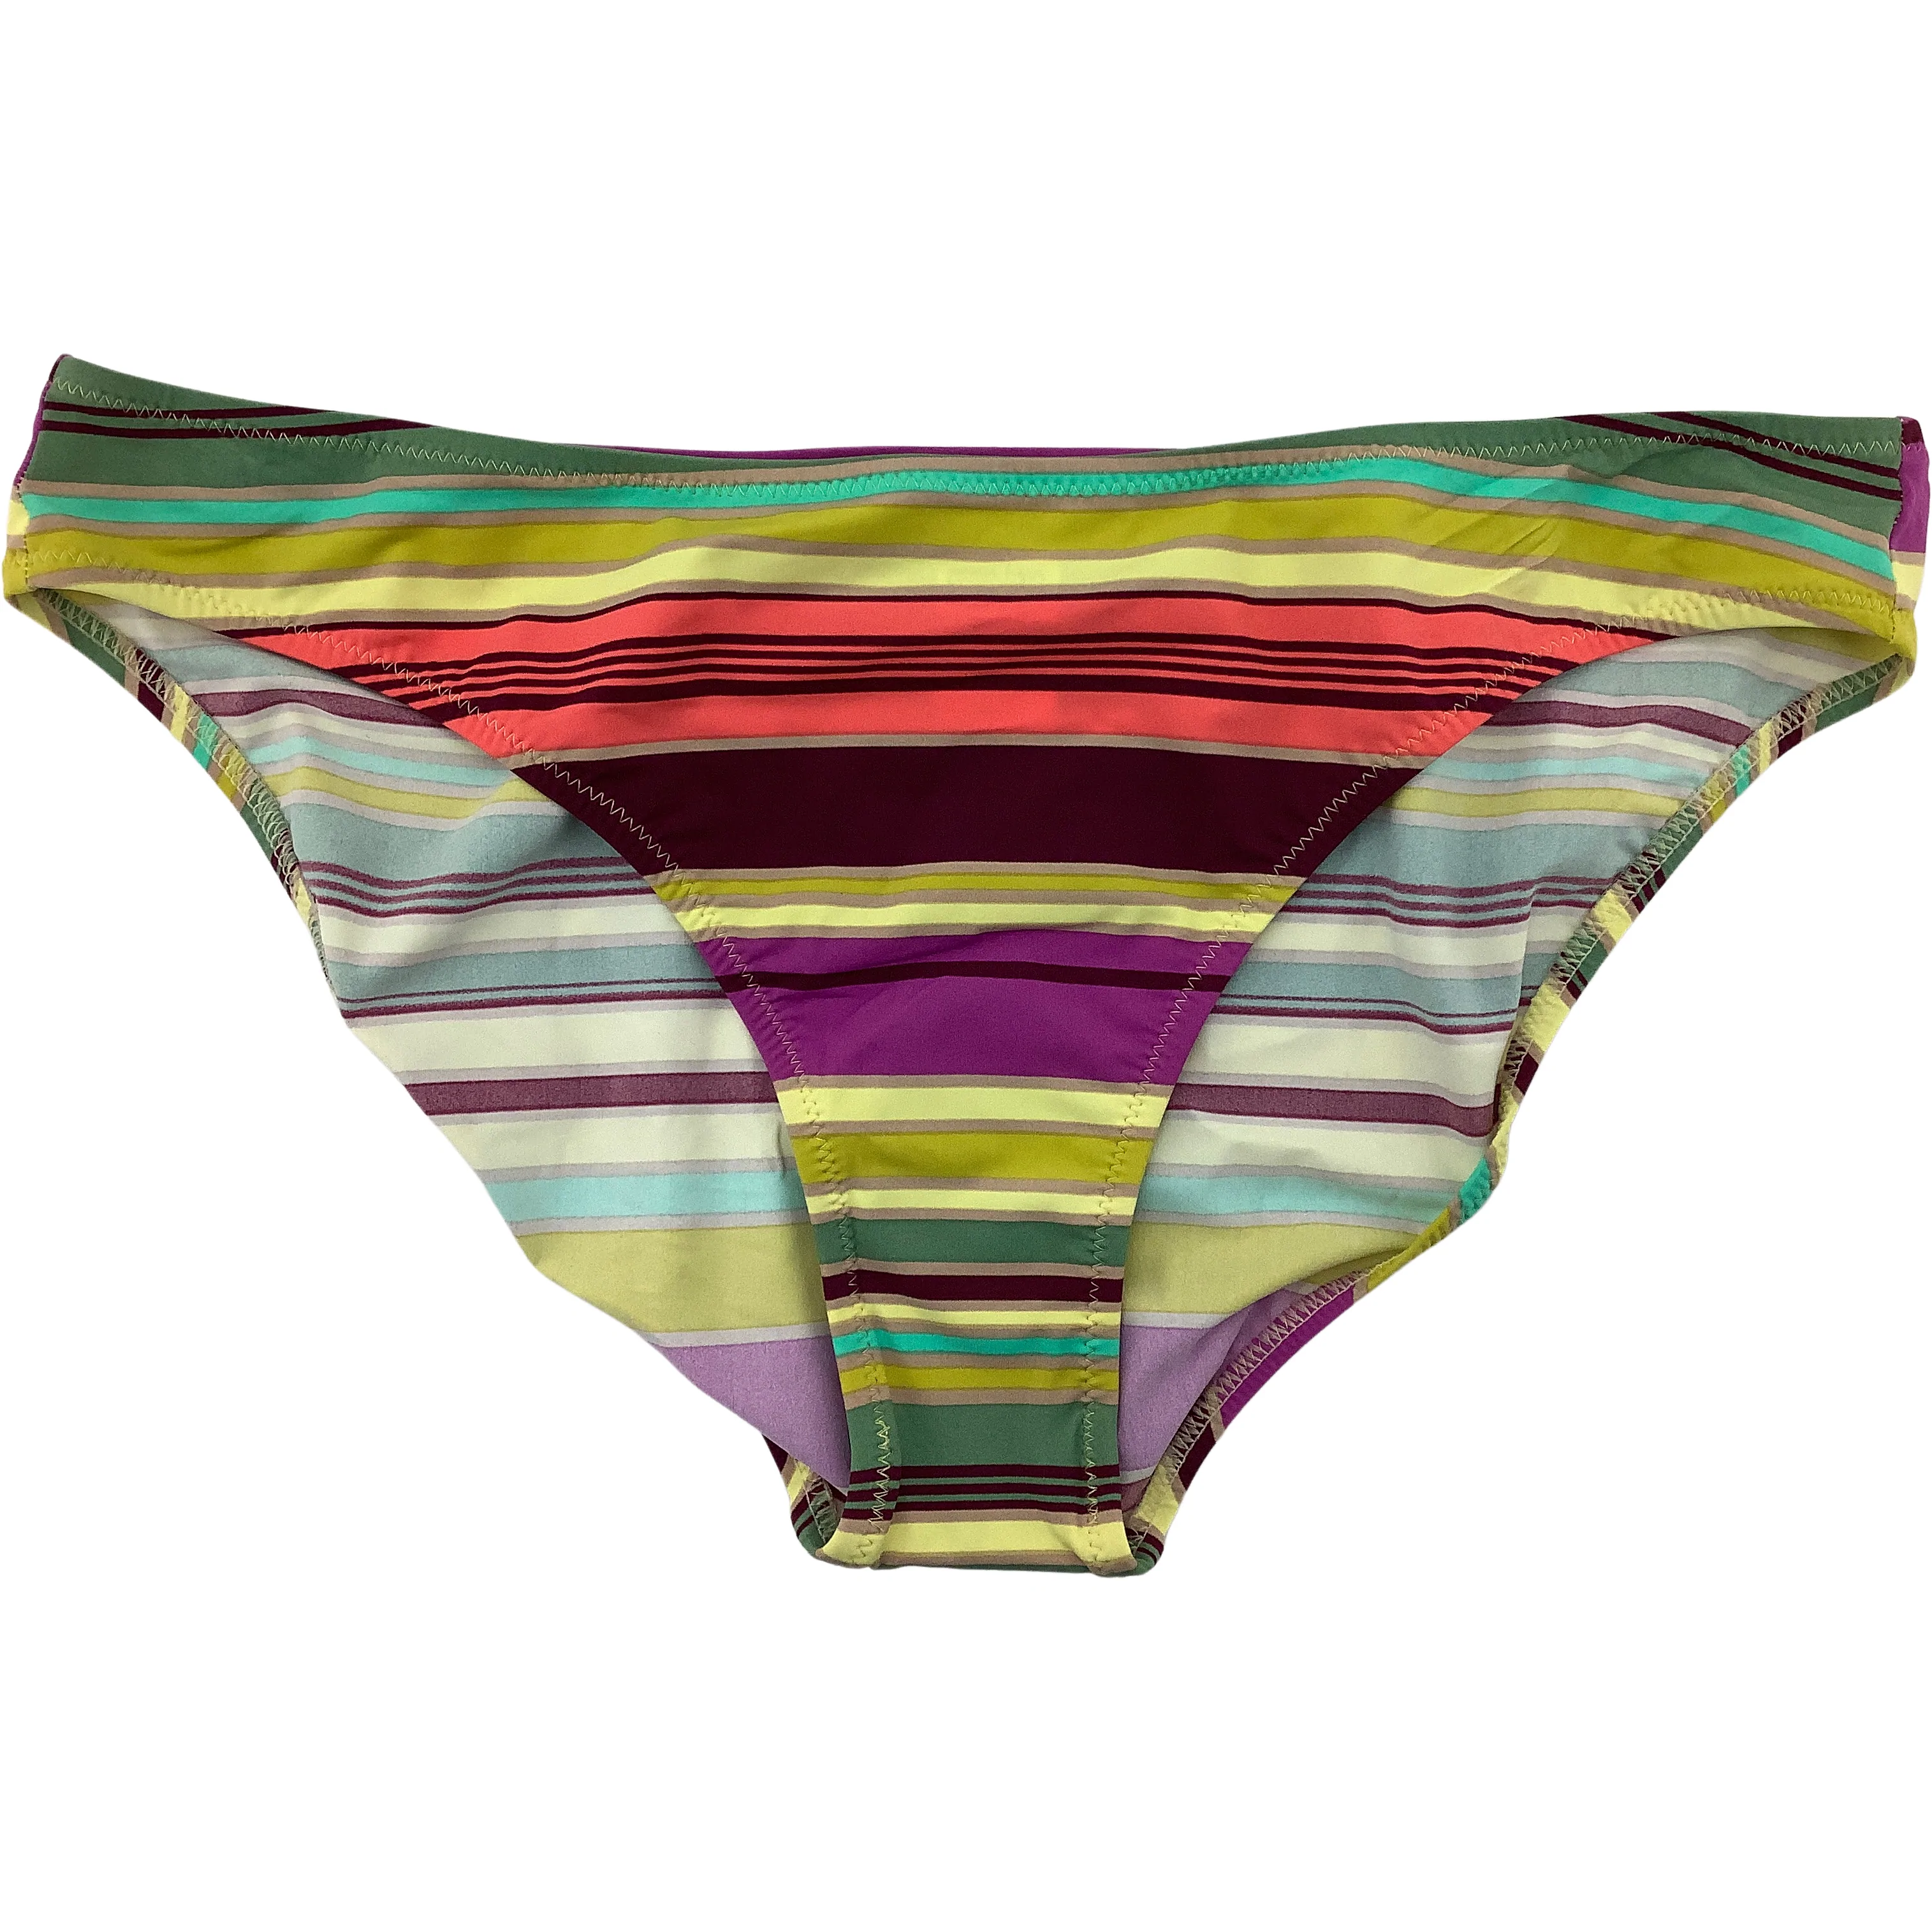 Rosa Faia Women's Bathing Suit / Bikini Style Swim Suit / Multicolour / Stripes / Size 12C